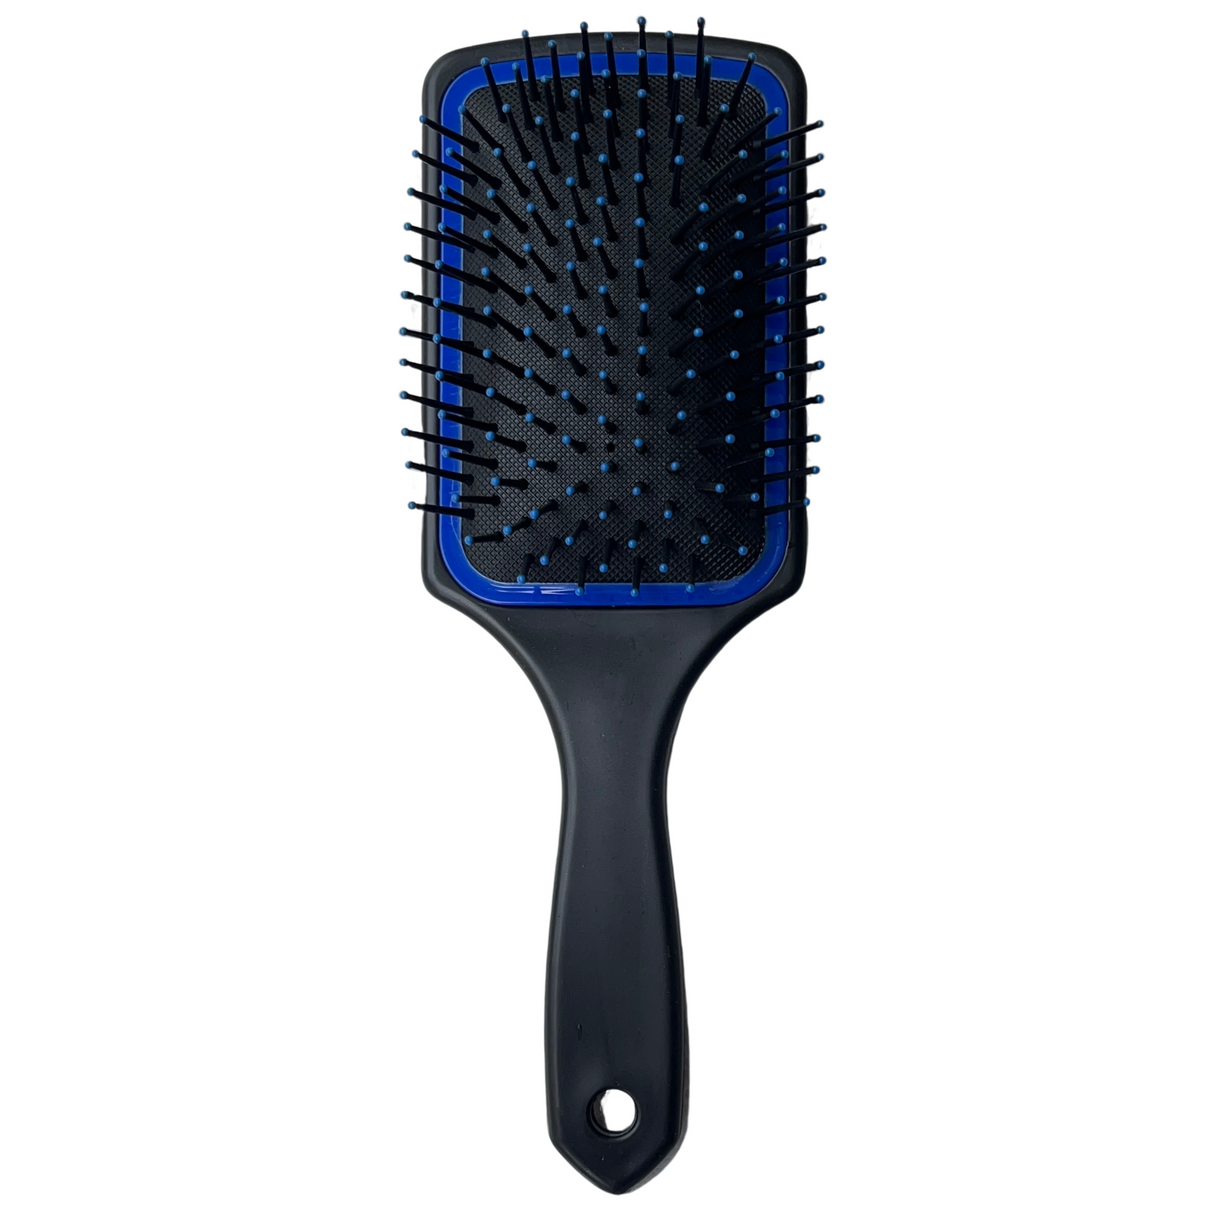 Blue&Green Detangling Hair Brush